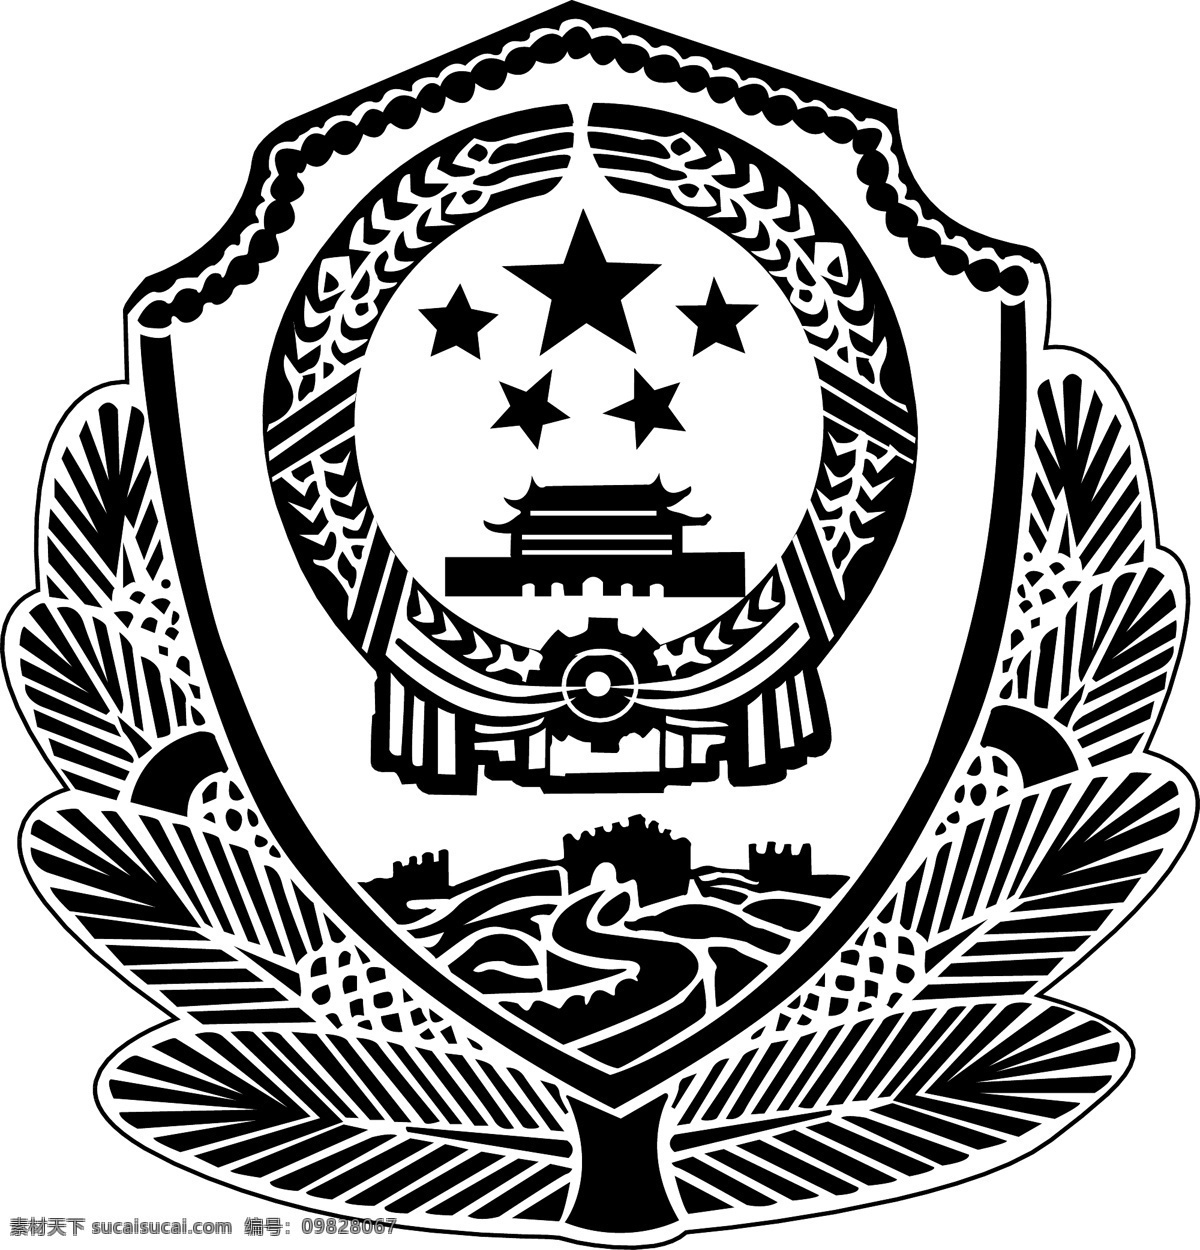 警徽 标识标志图标 公共标识标志 矢量图库 警徽矢量素材 警徽模板下载